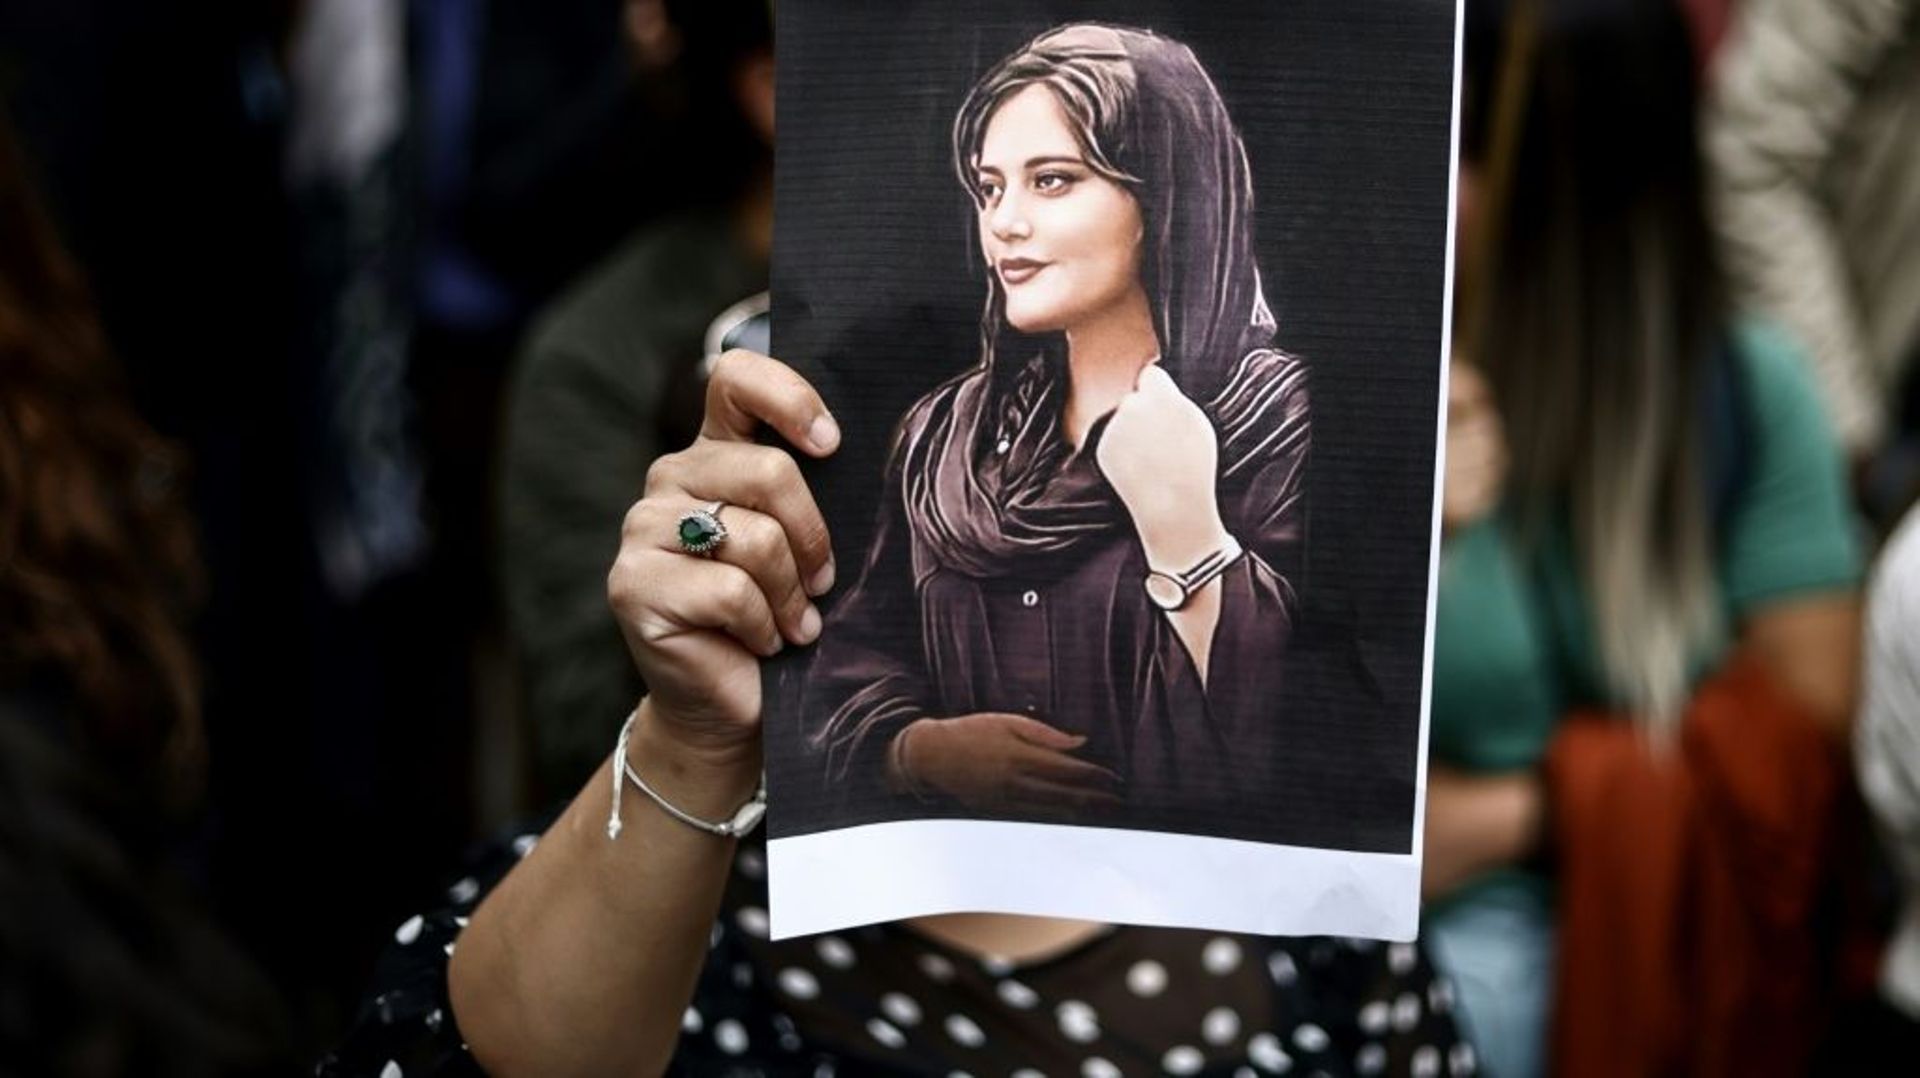 Le portrait de Mahsa Amini, lors d’une manifestation de soutien au mouvement de contestation en Iran, le 23 septembre 2022 à Bruxelles